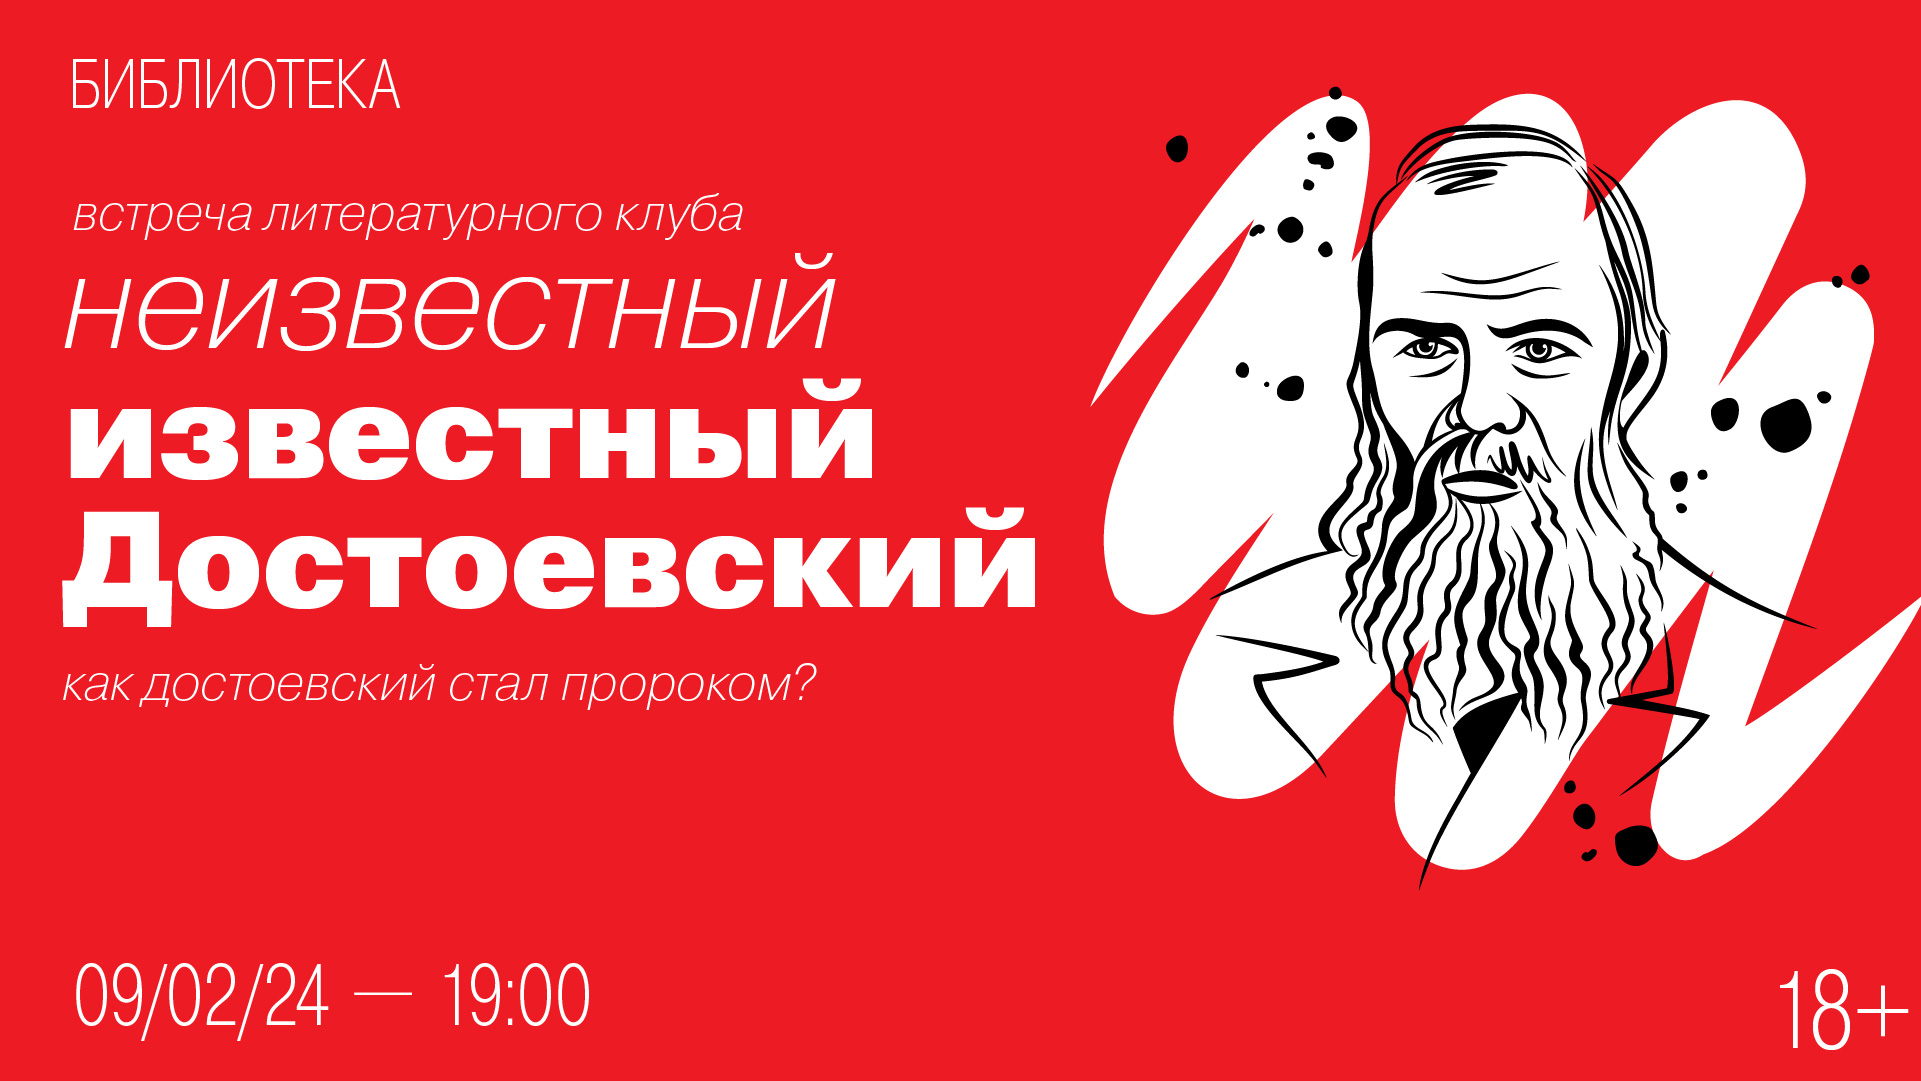 Встреча литературного клуба «Неизвестный известный Достоевский»: Как Достоевский стал пророком?